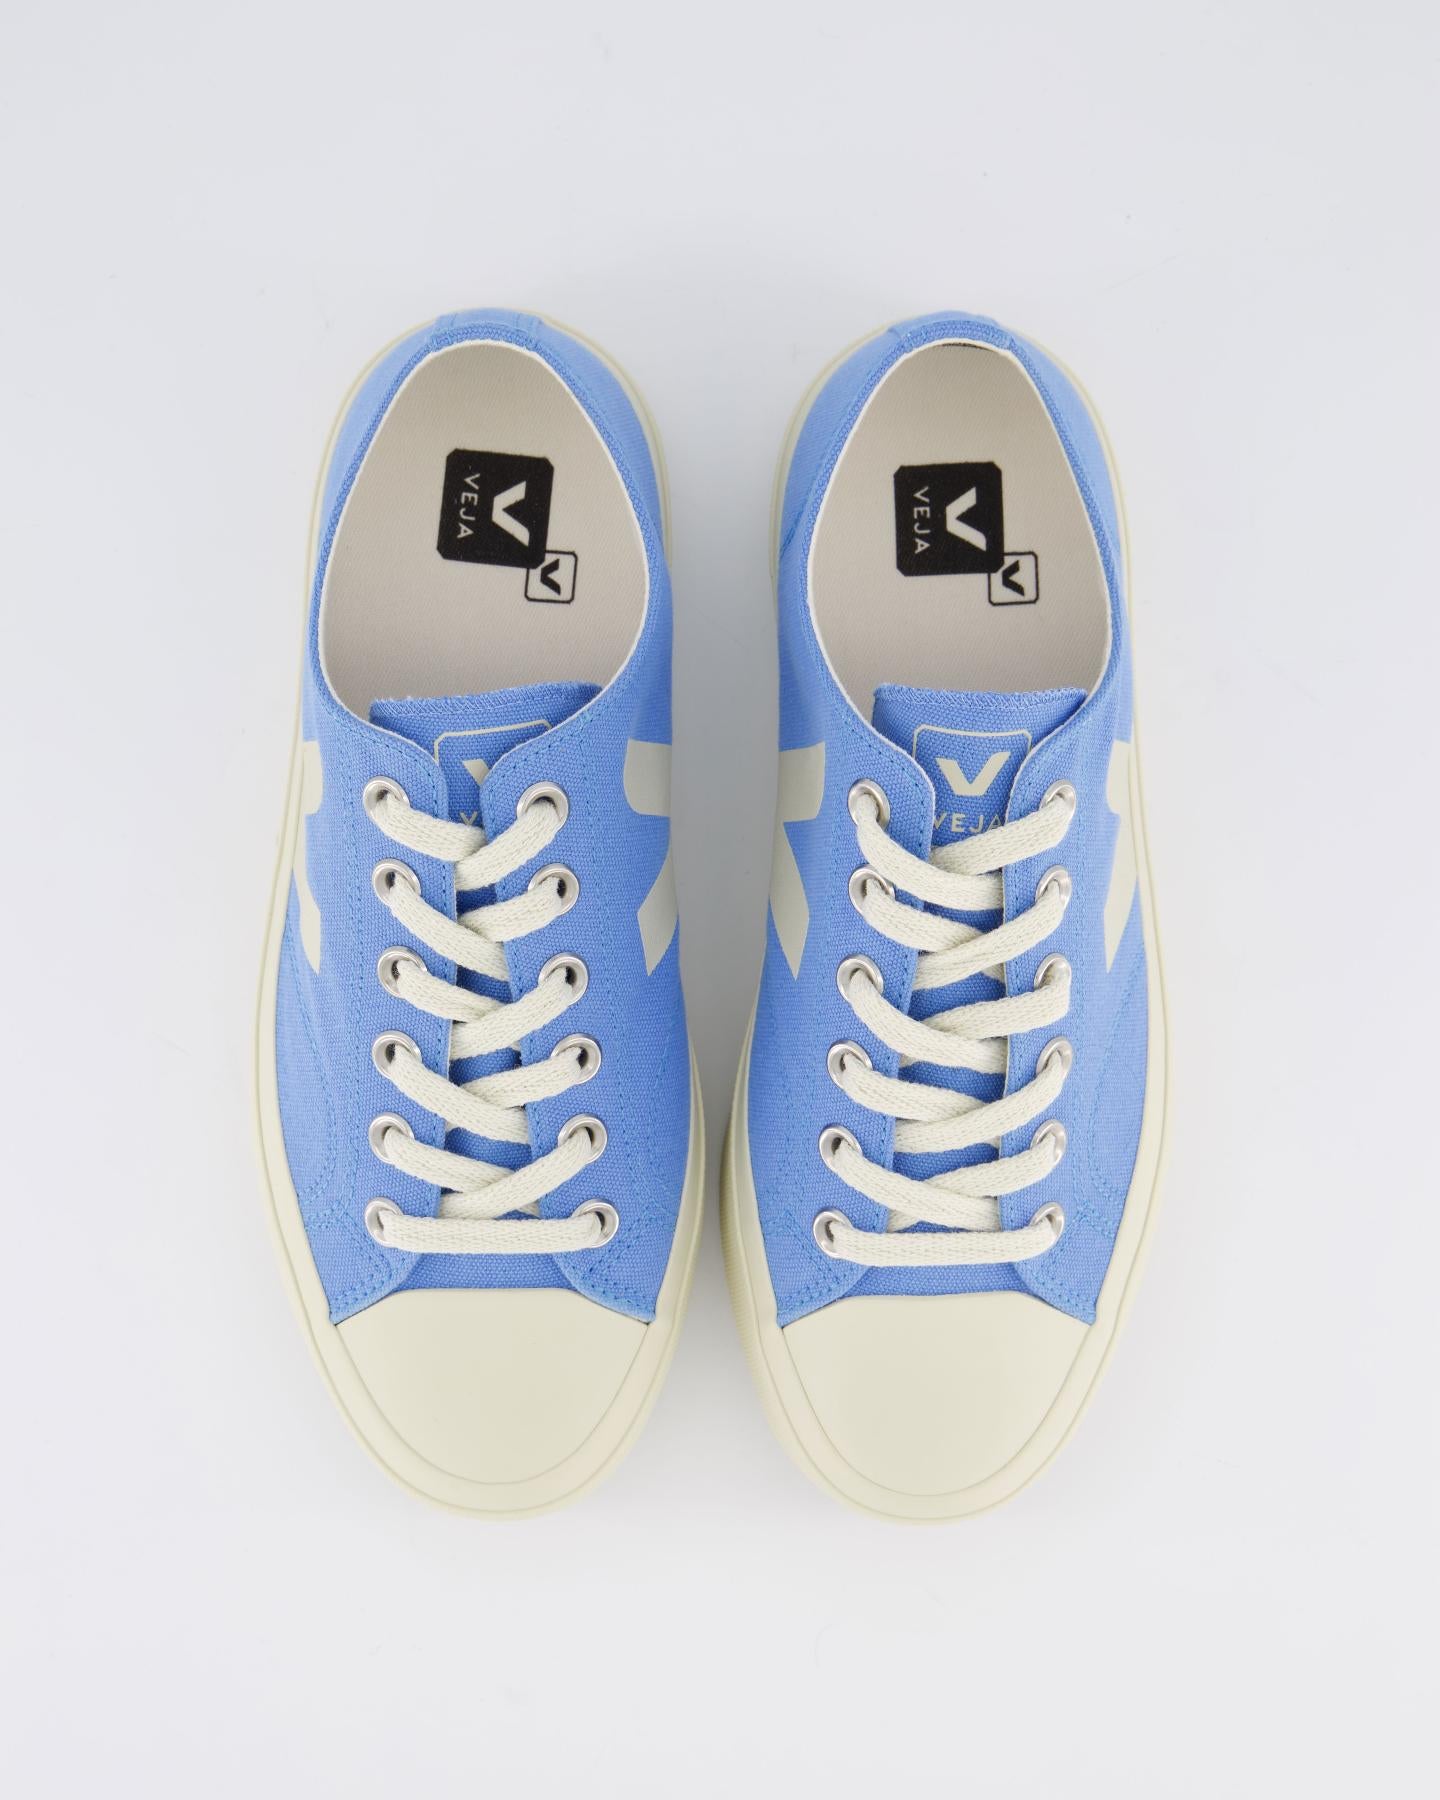 Dames Wata II Sneaker Blauw/Wit